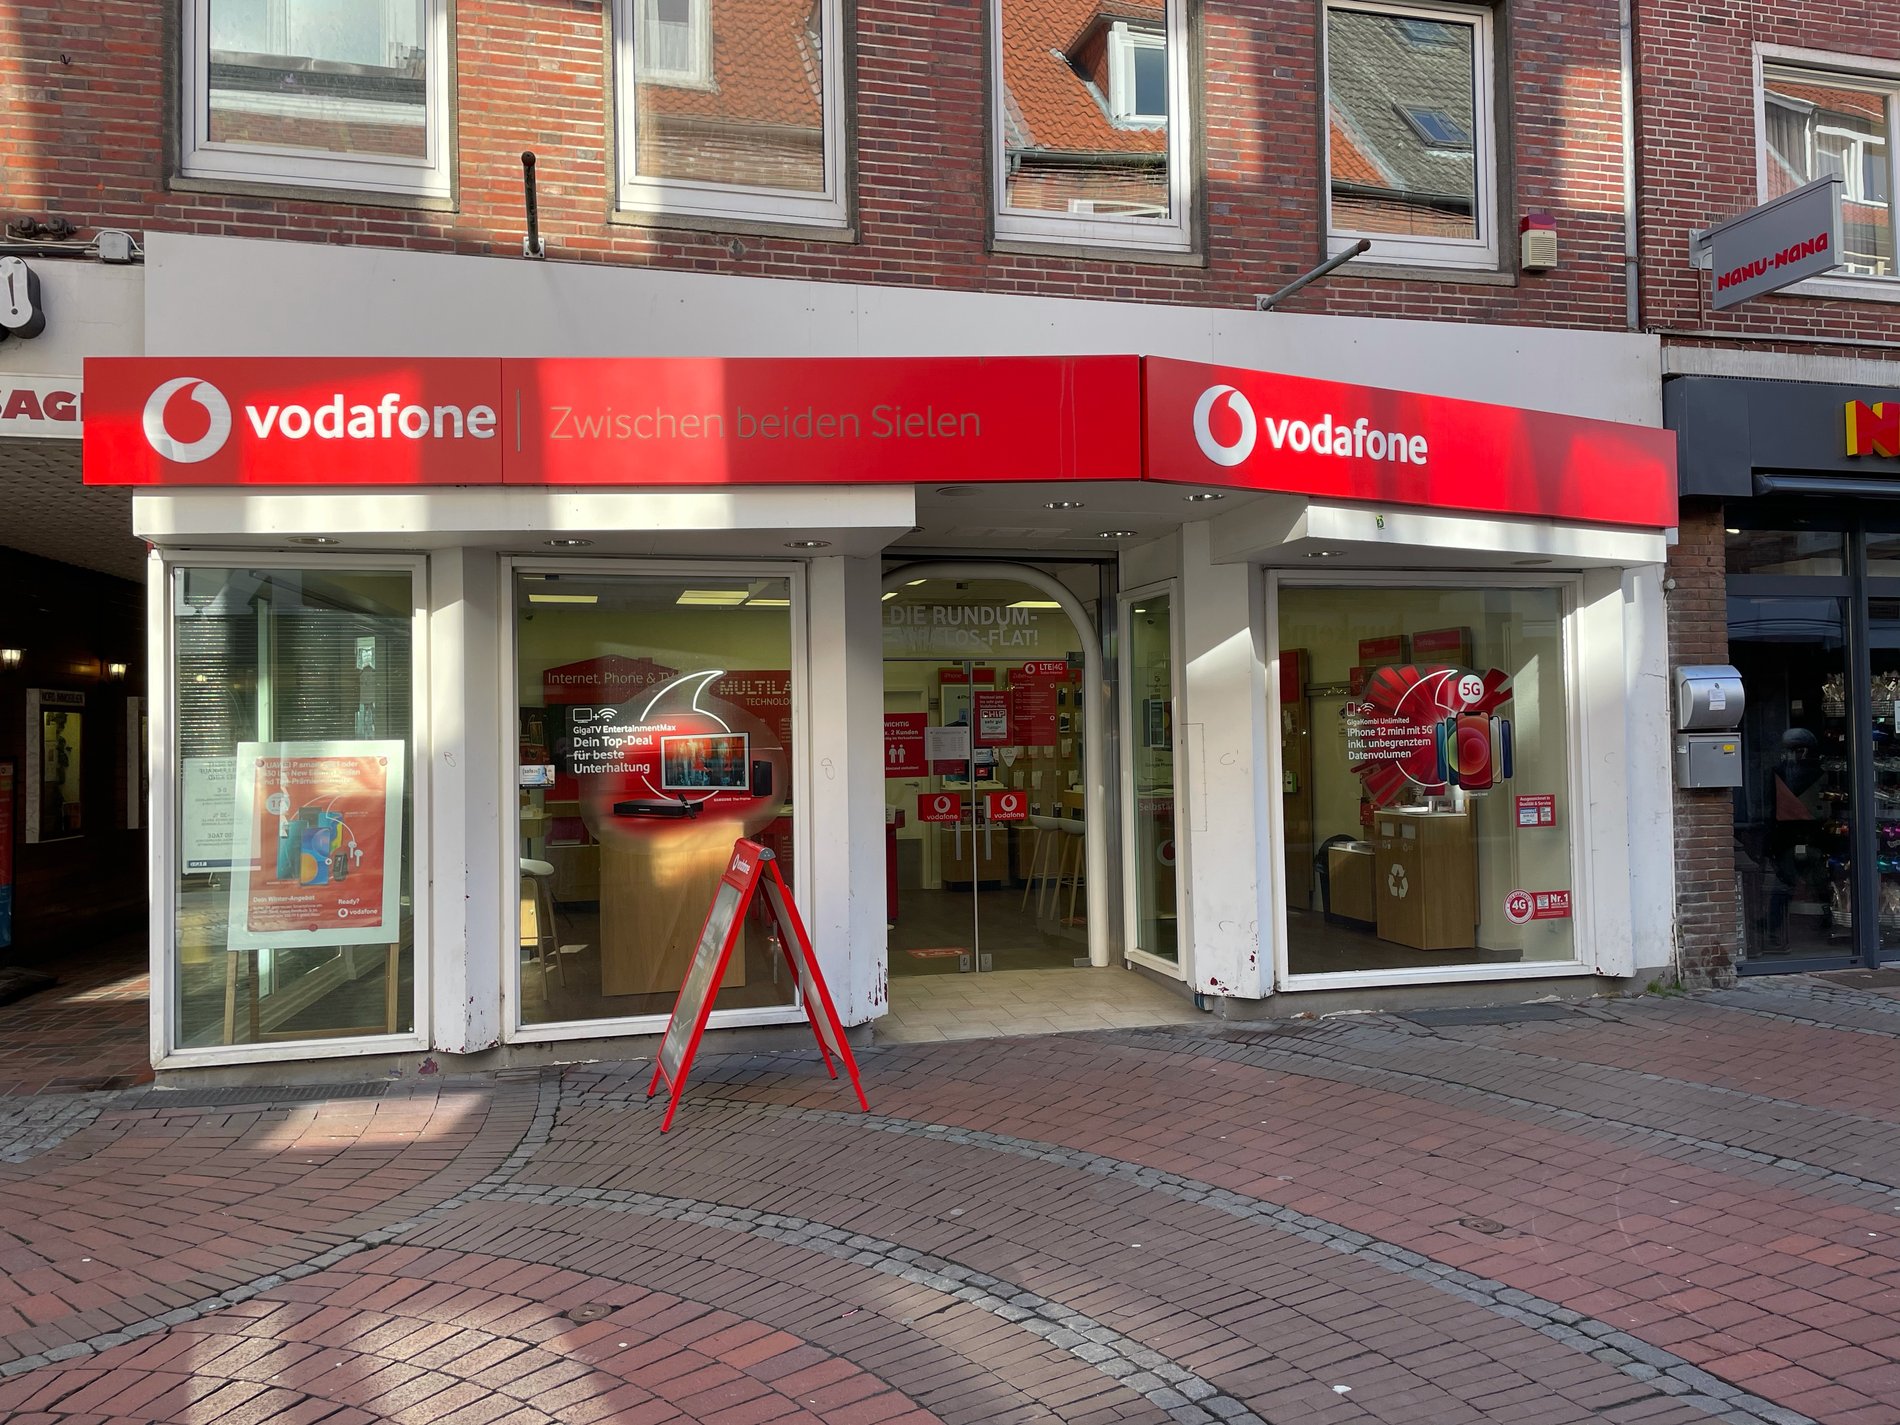 Vodafone-Shop in Emden, Zwischen beiden Sielen 11